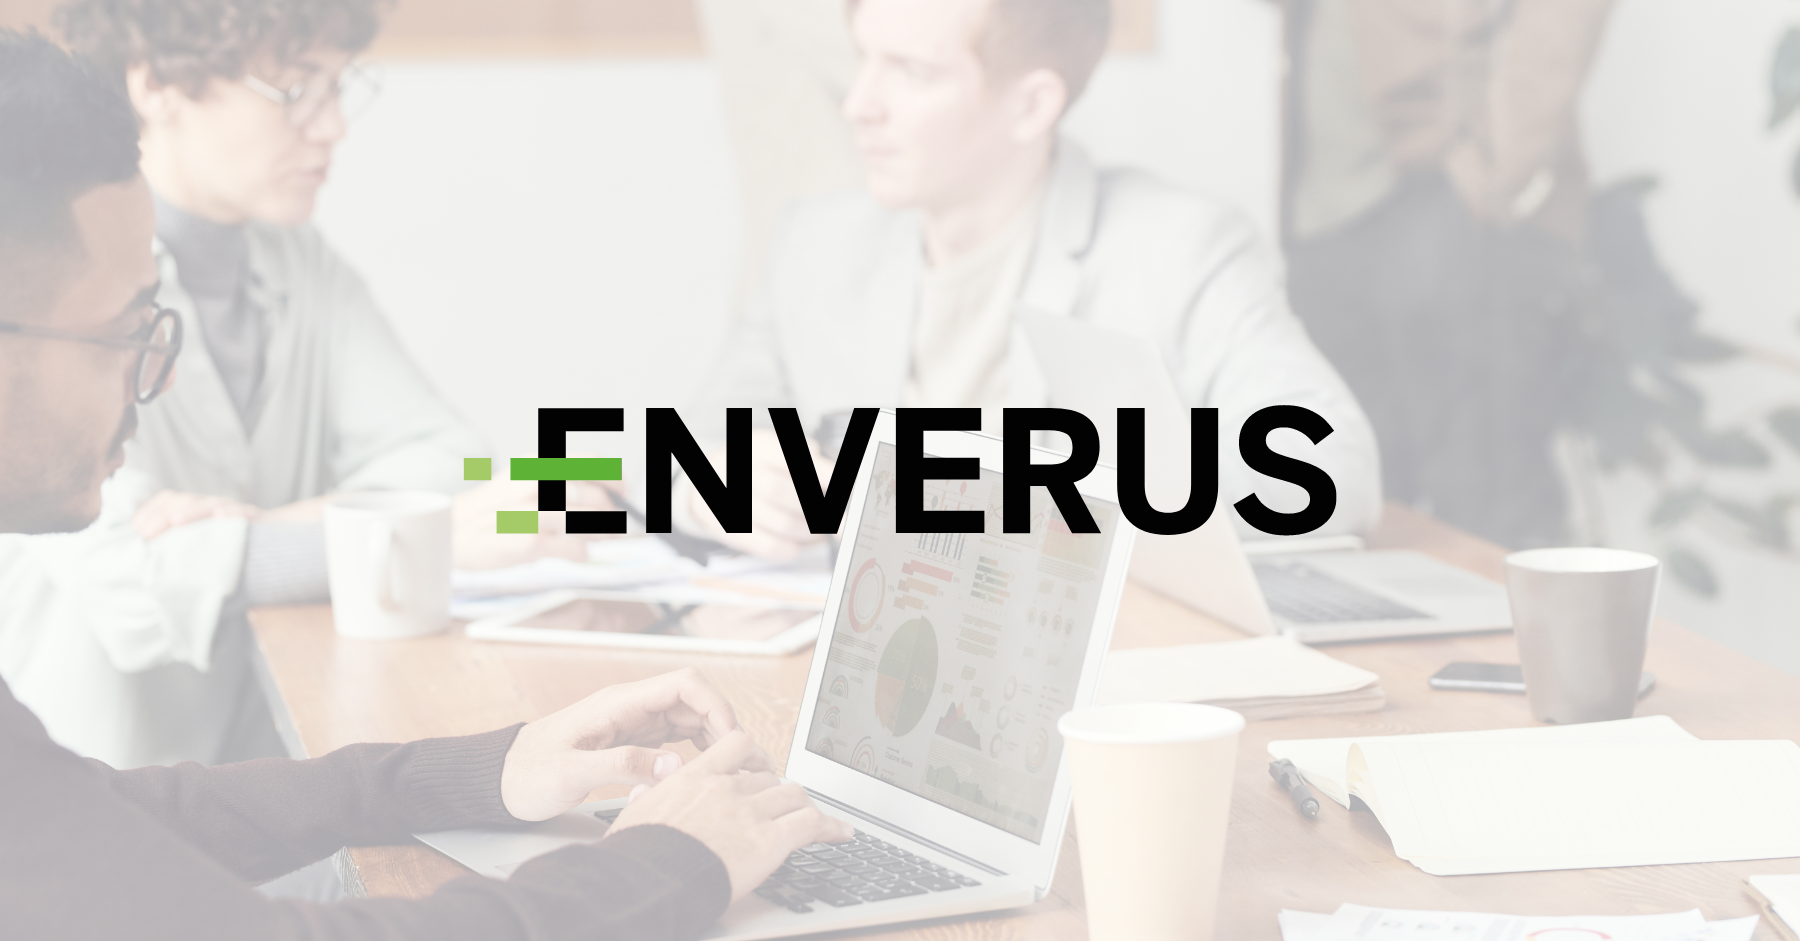 Enverus Case Study Feature Image